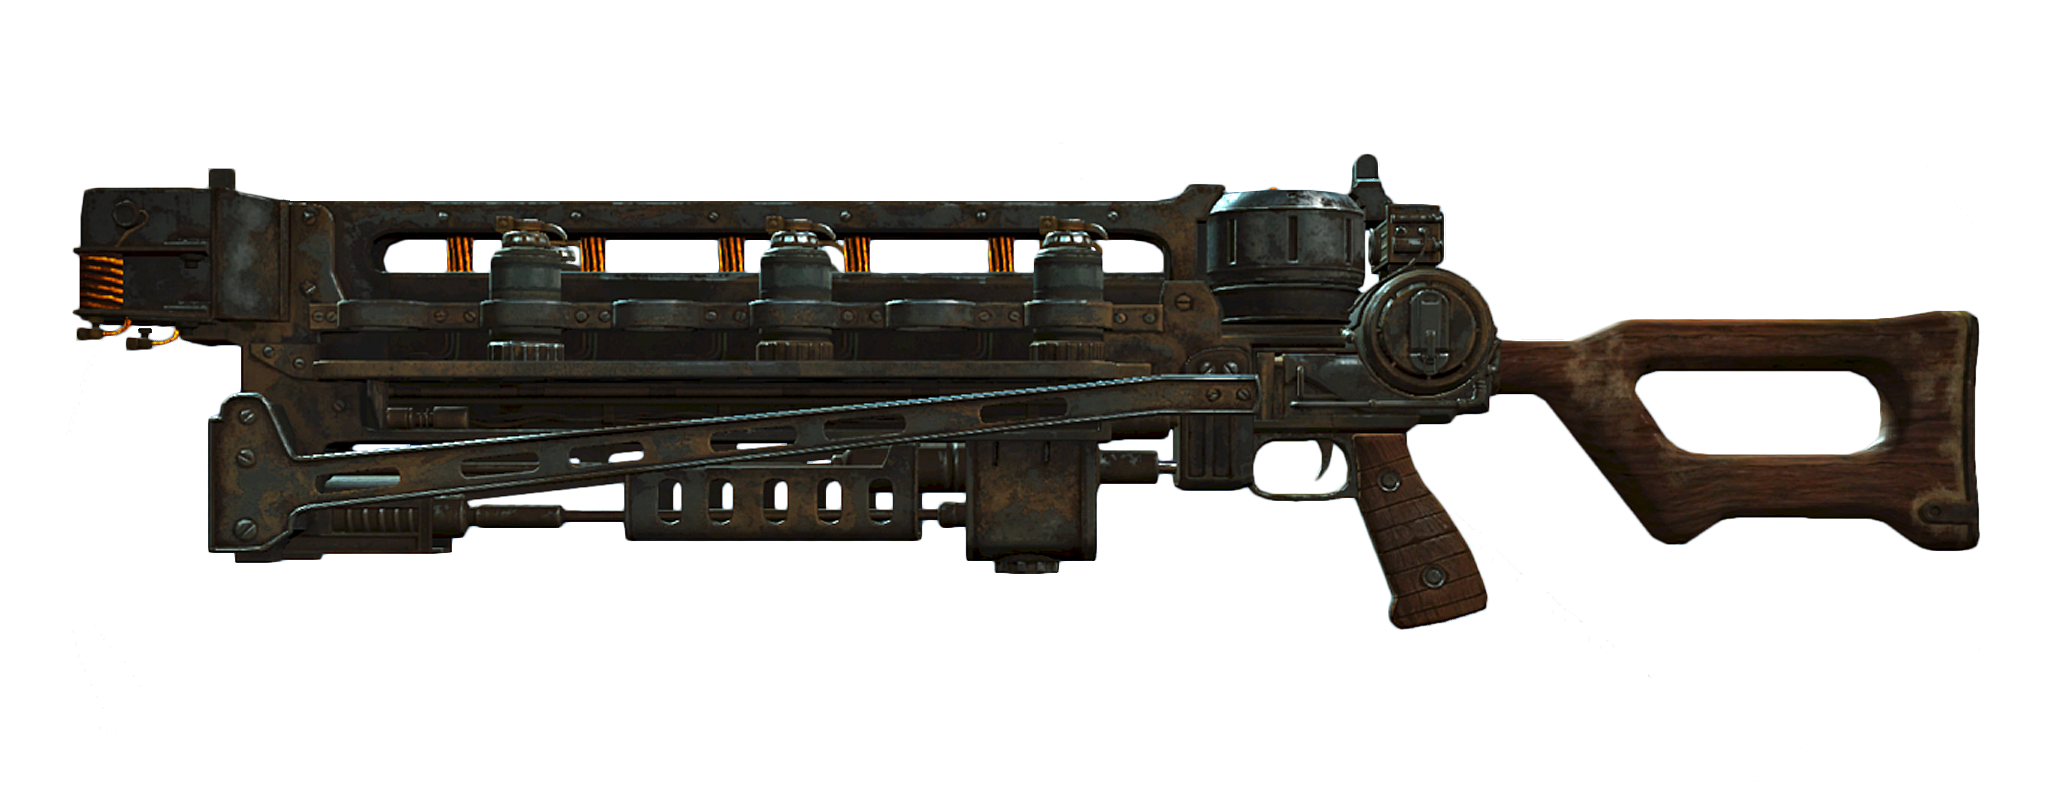 fallout 4 battle rifle